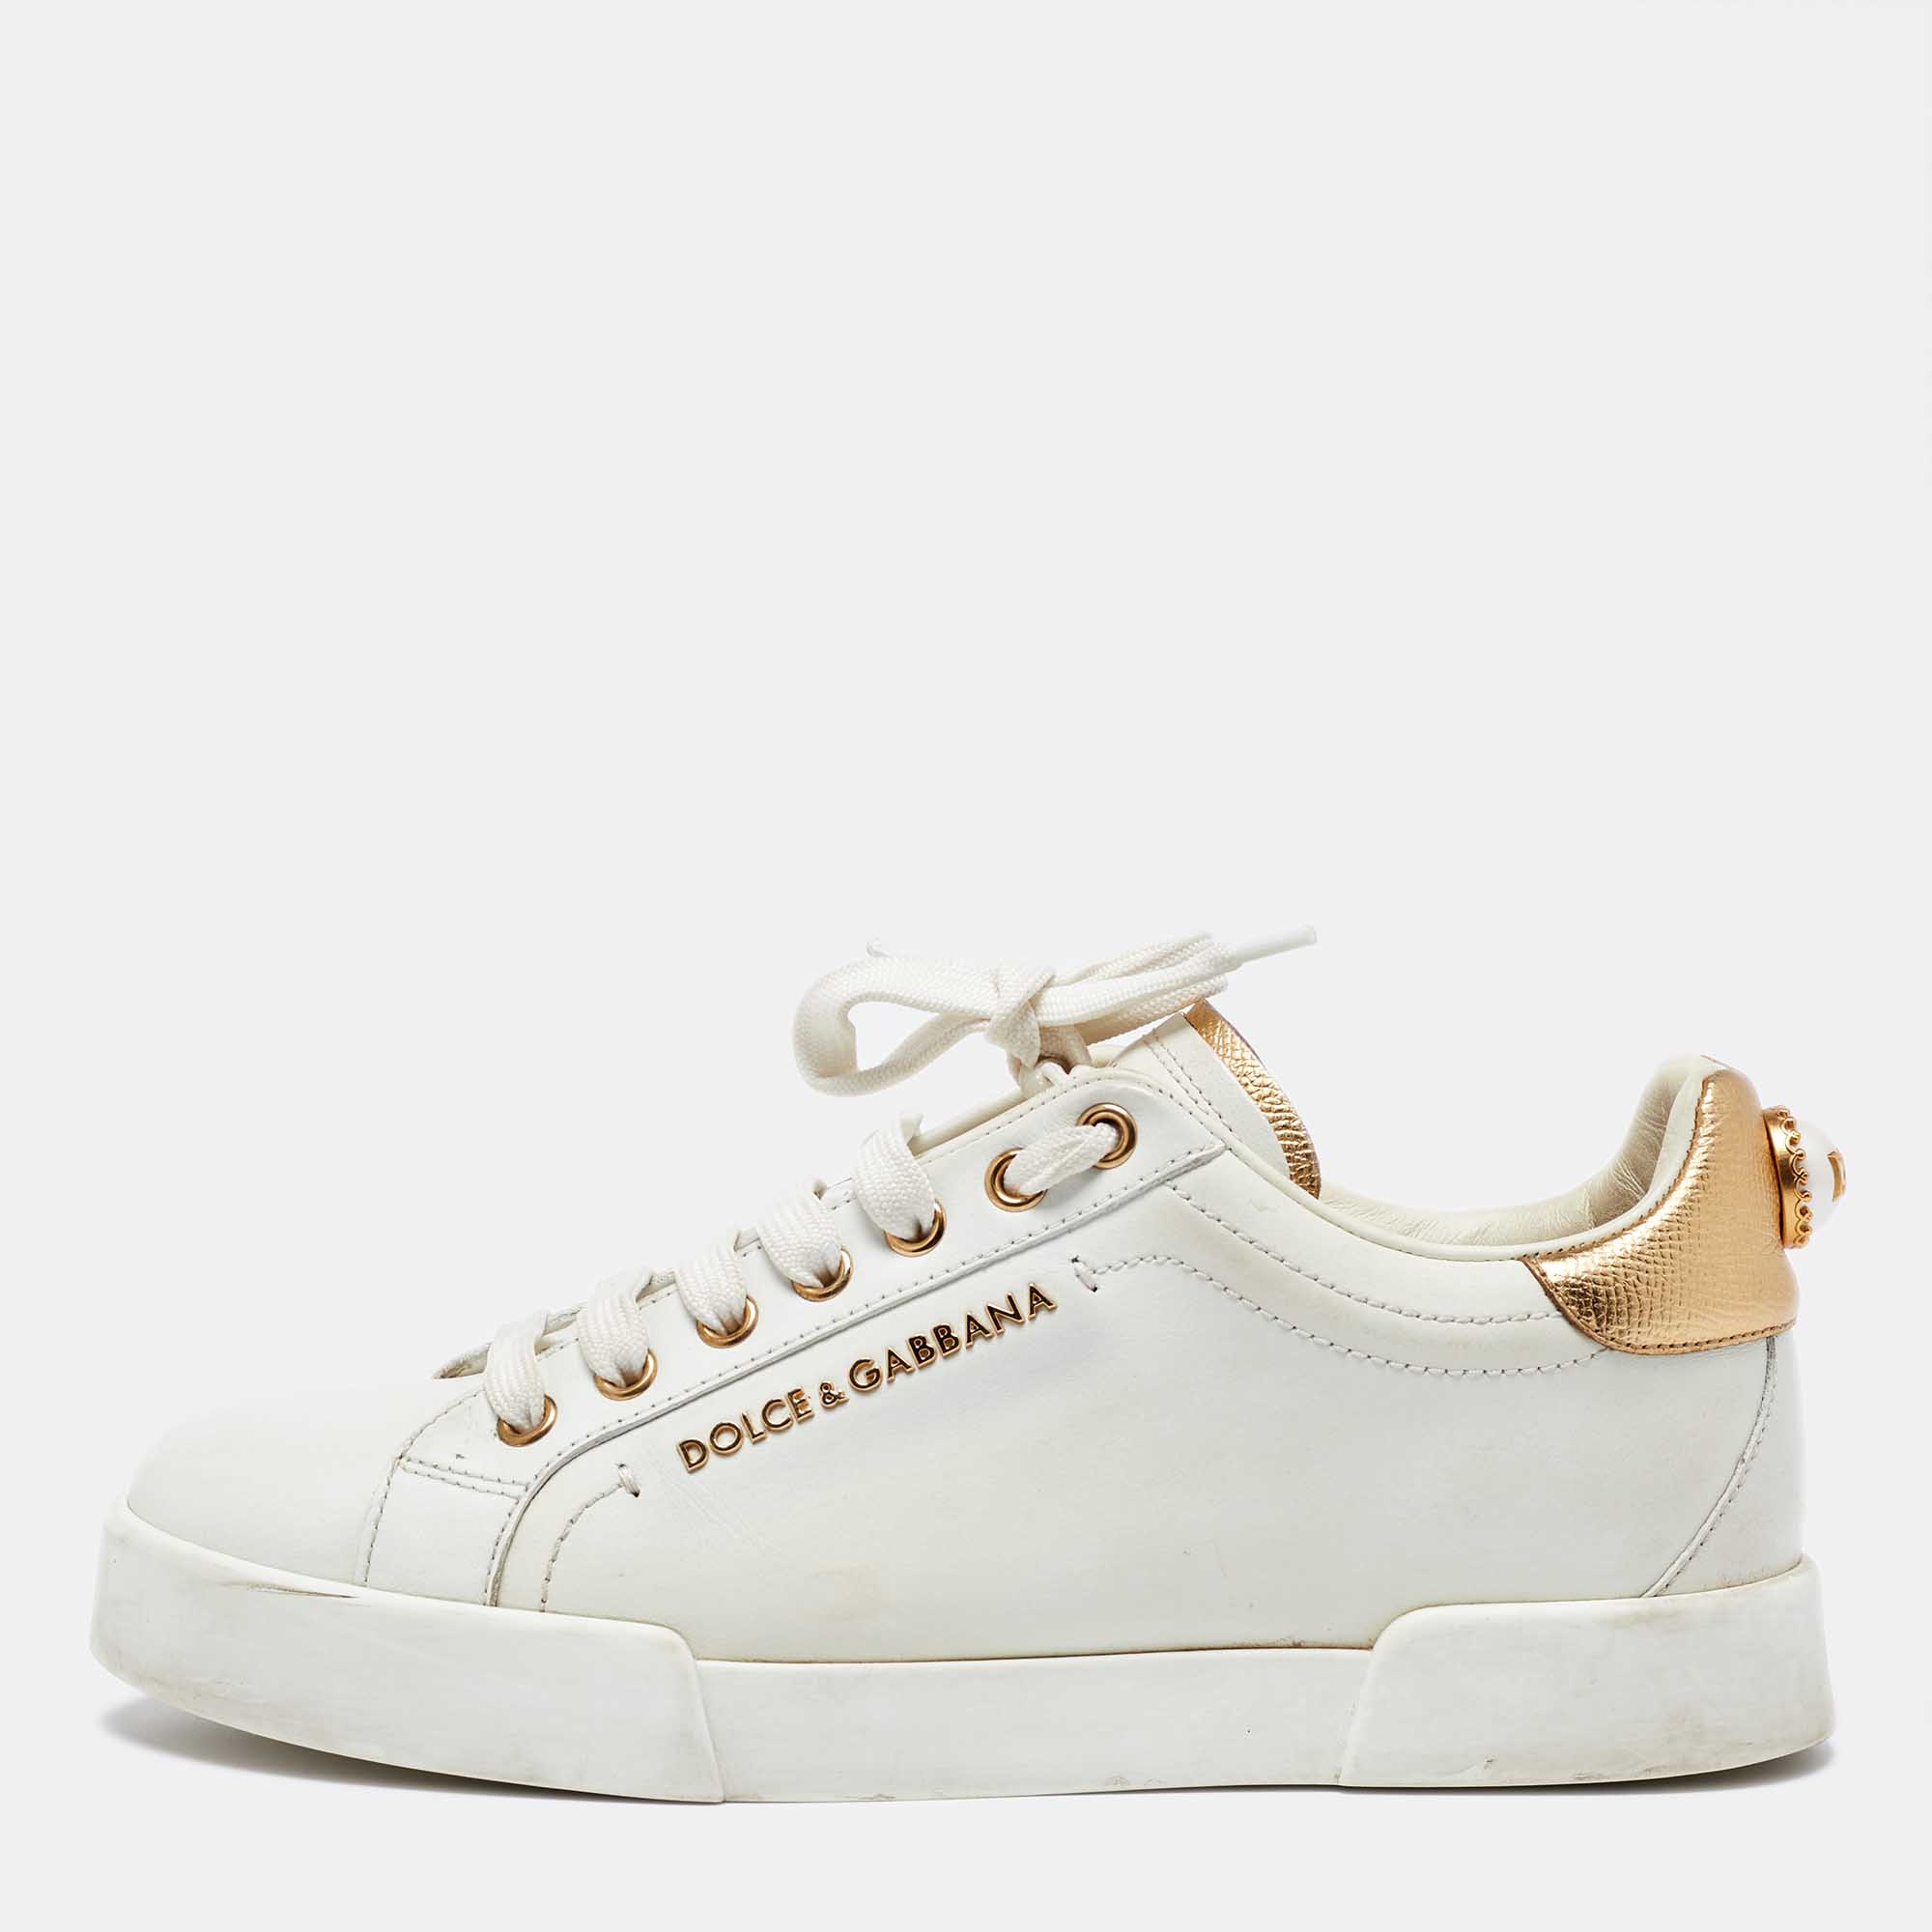 

Dolce & Gabbana White/Gold Leather Portofino Sneakers Size